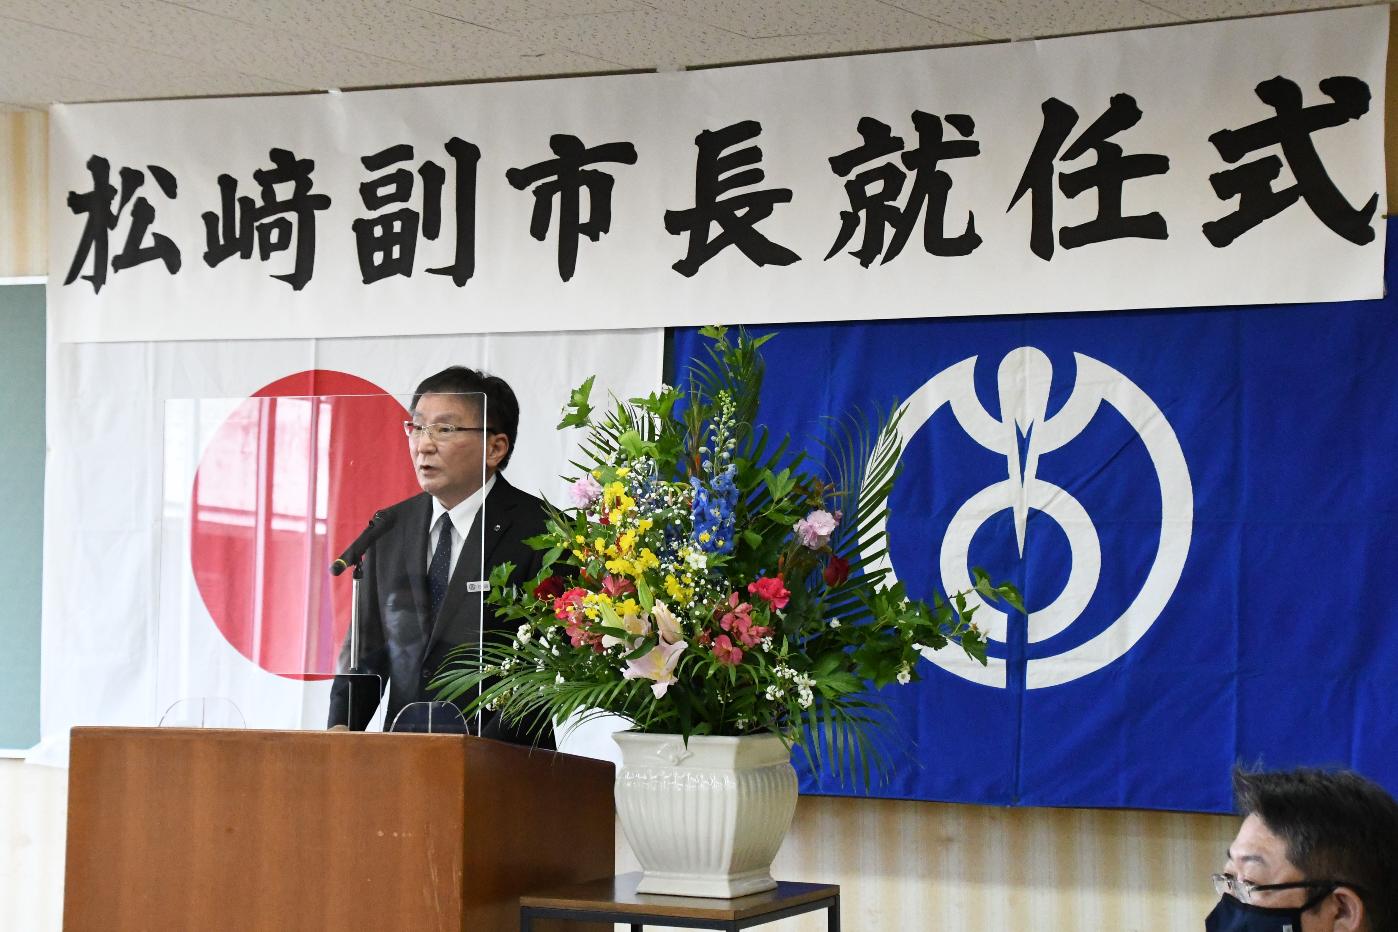 副市長就任式であいさつを述べる松崎副市長の写真